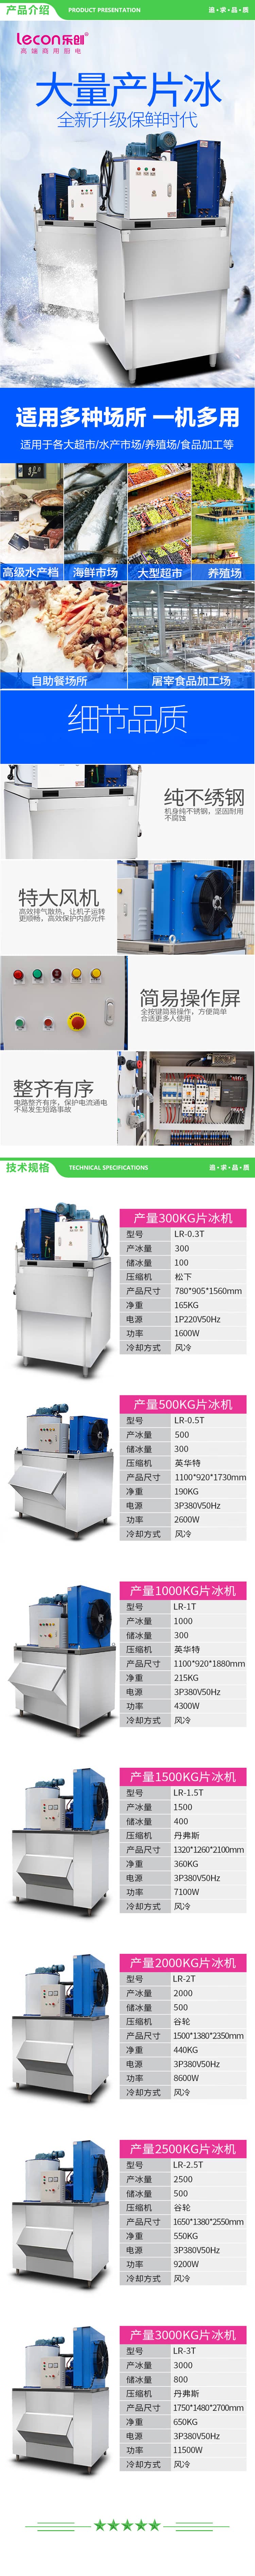 乐创 lecon LR-1T 制冰机商用海鲜保鲜片冰机大产量 1000KG制冰机 2.jpg